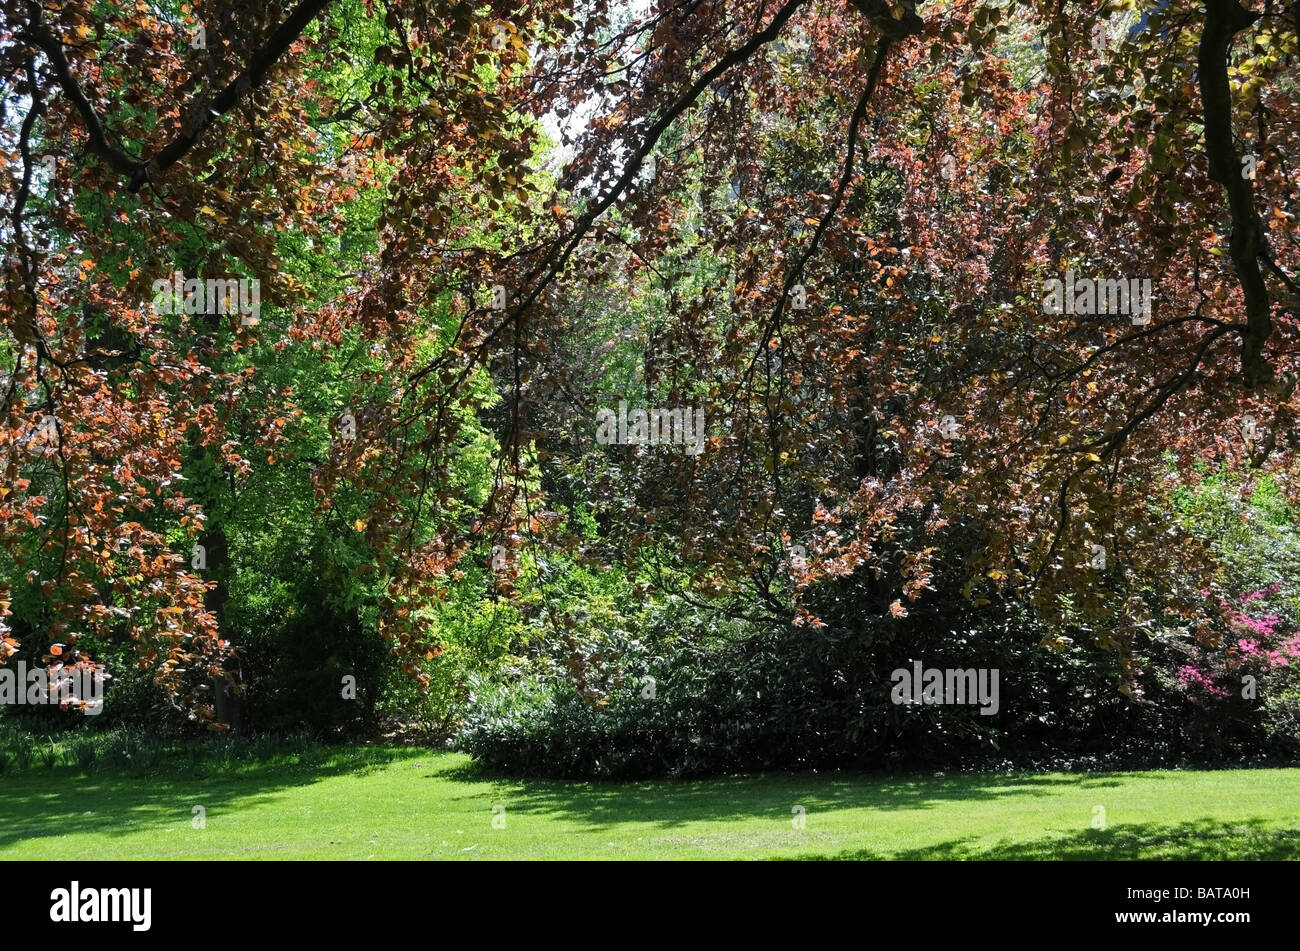 Les arbres au printemps, le cuivre /hêtre européen dans 'Jardin de Diane' (Diana's Garden) dans le château / Château de Fontainebleau France Banque D'Images